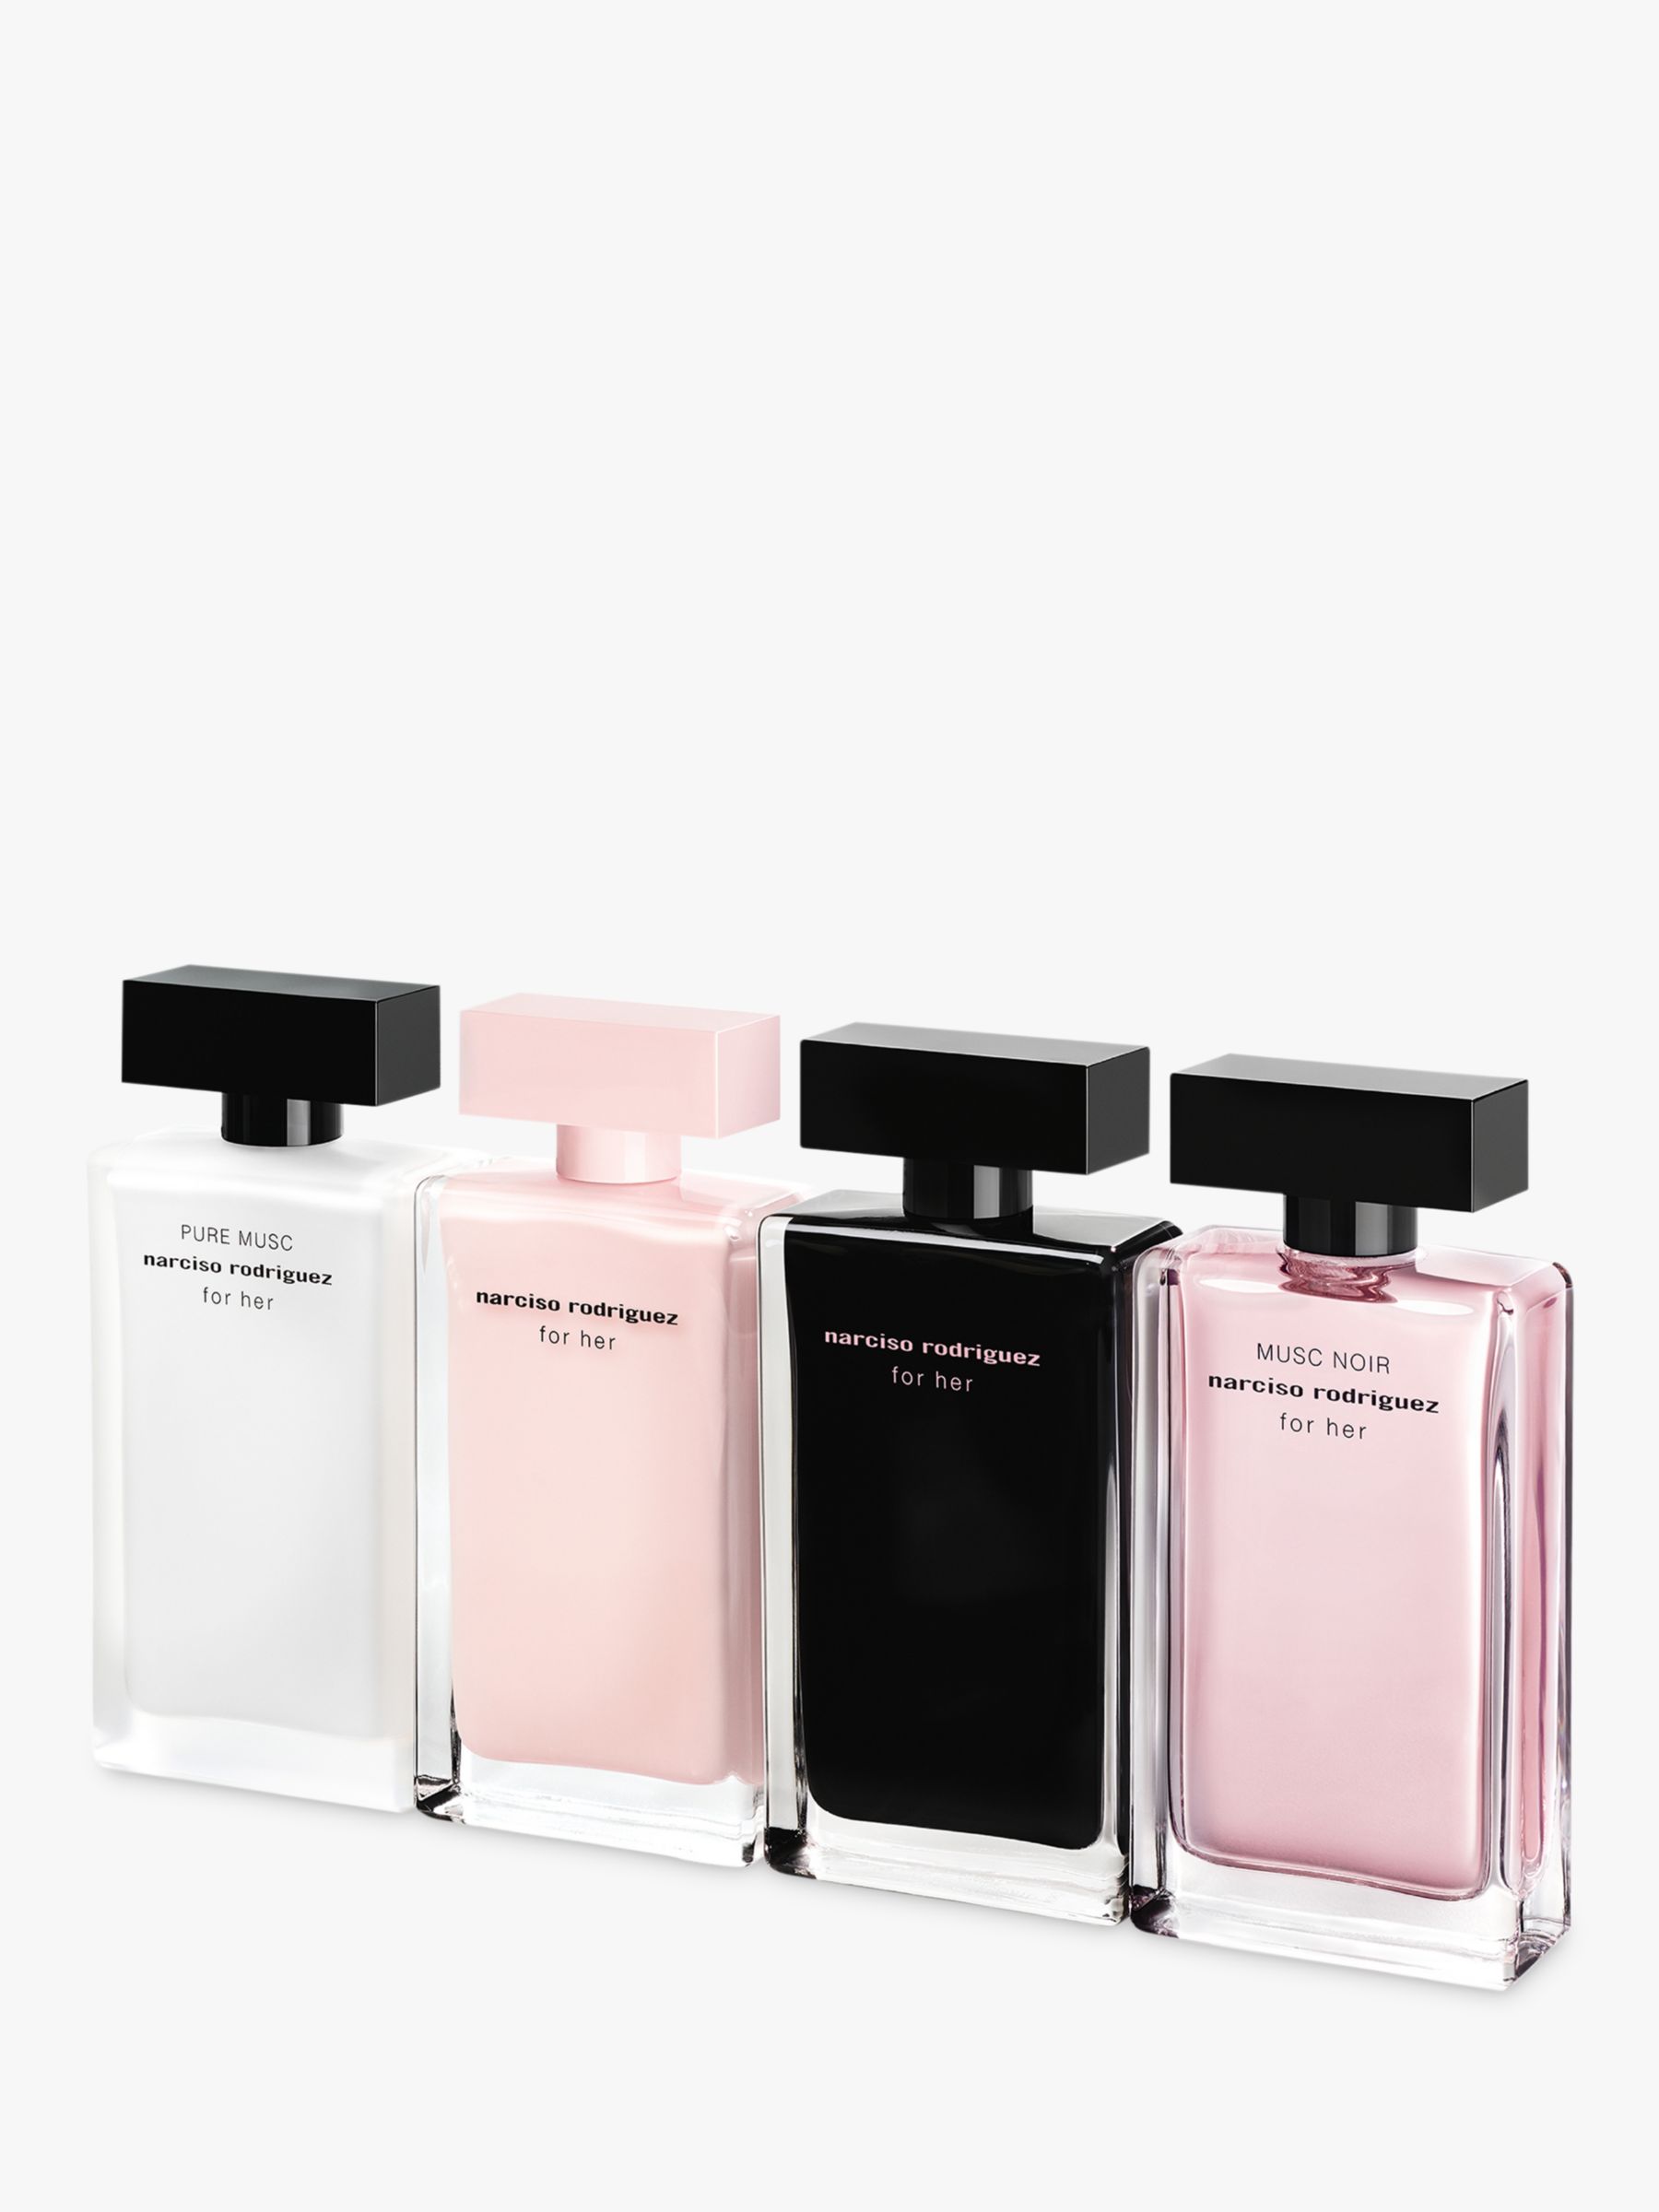 Narciso Rodriguez for Her Eau de Parfum at John Lewis & Partners